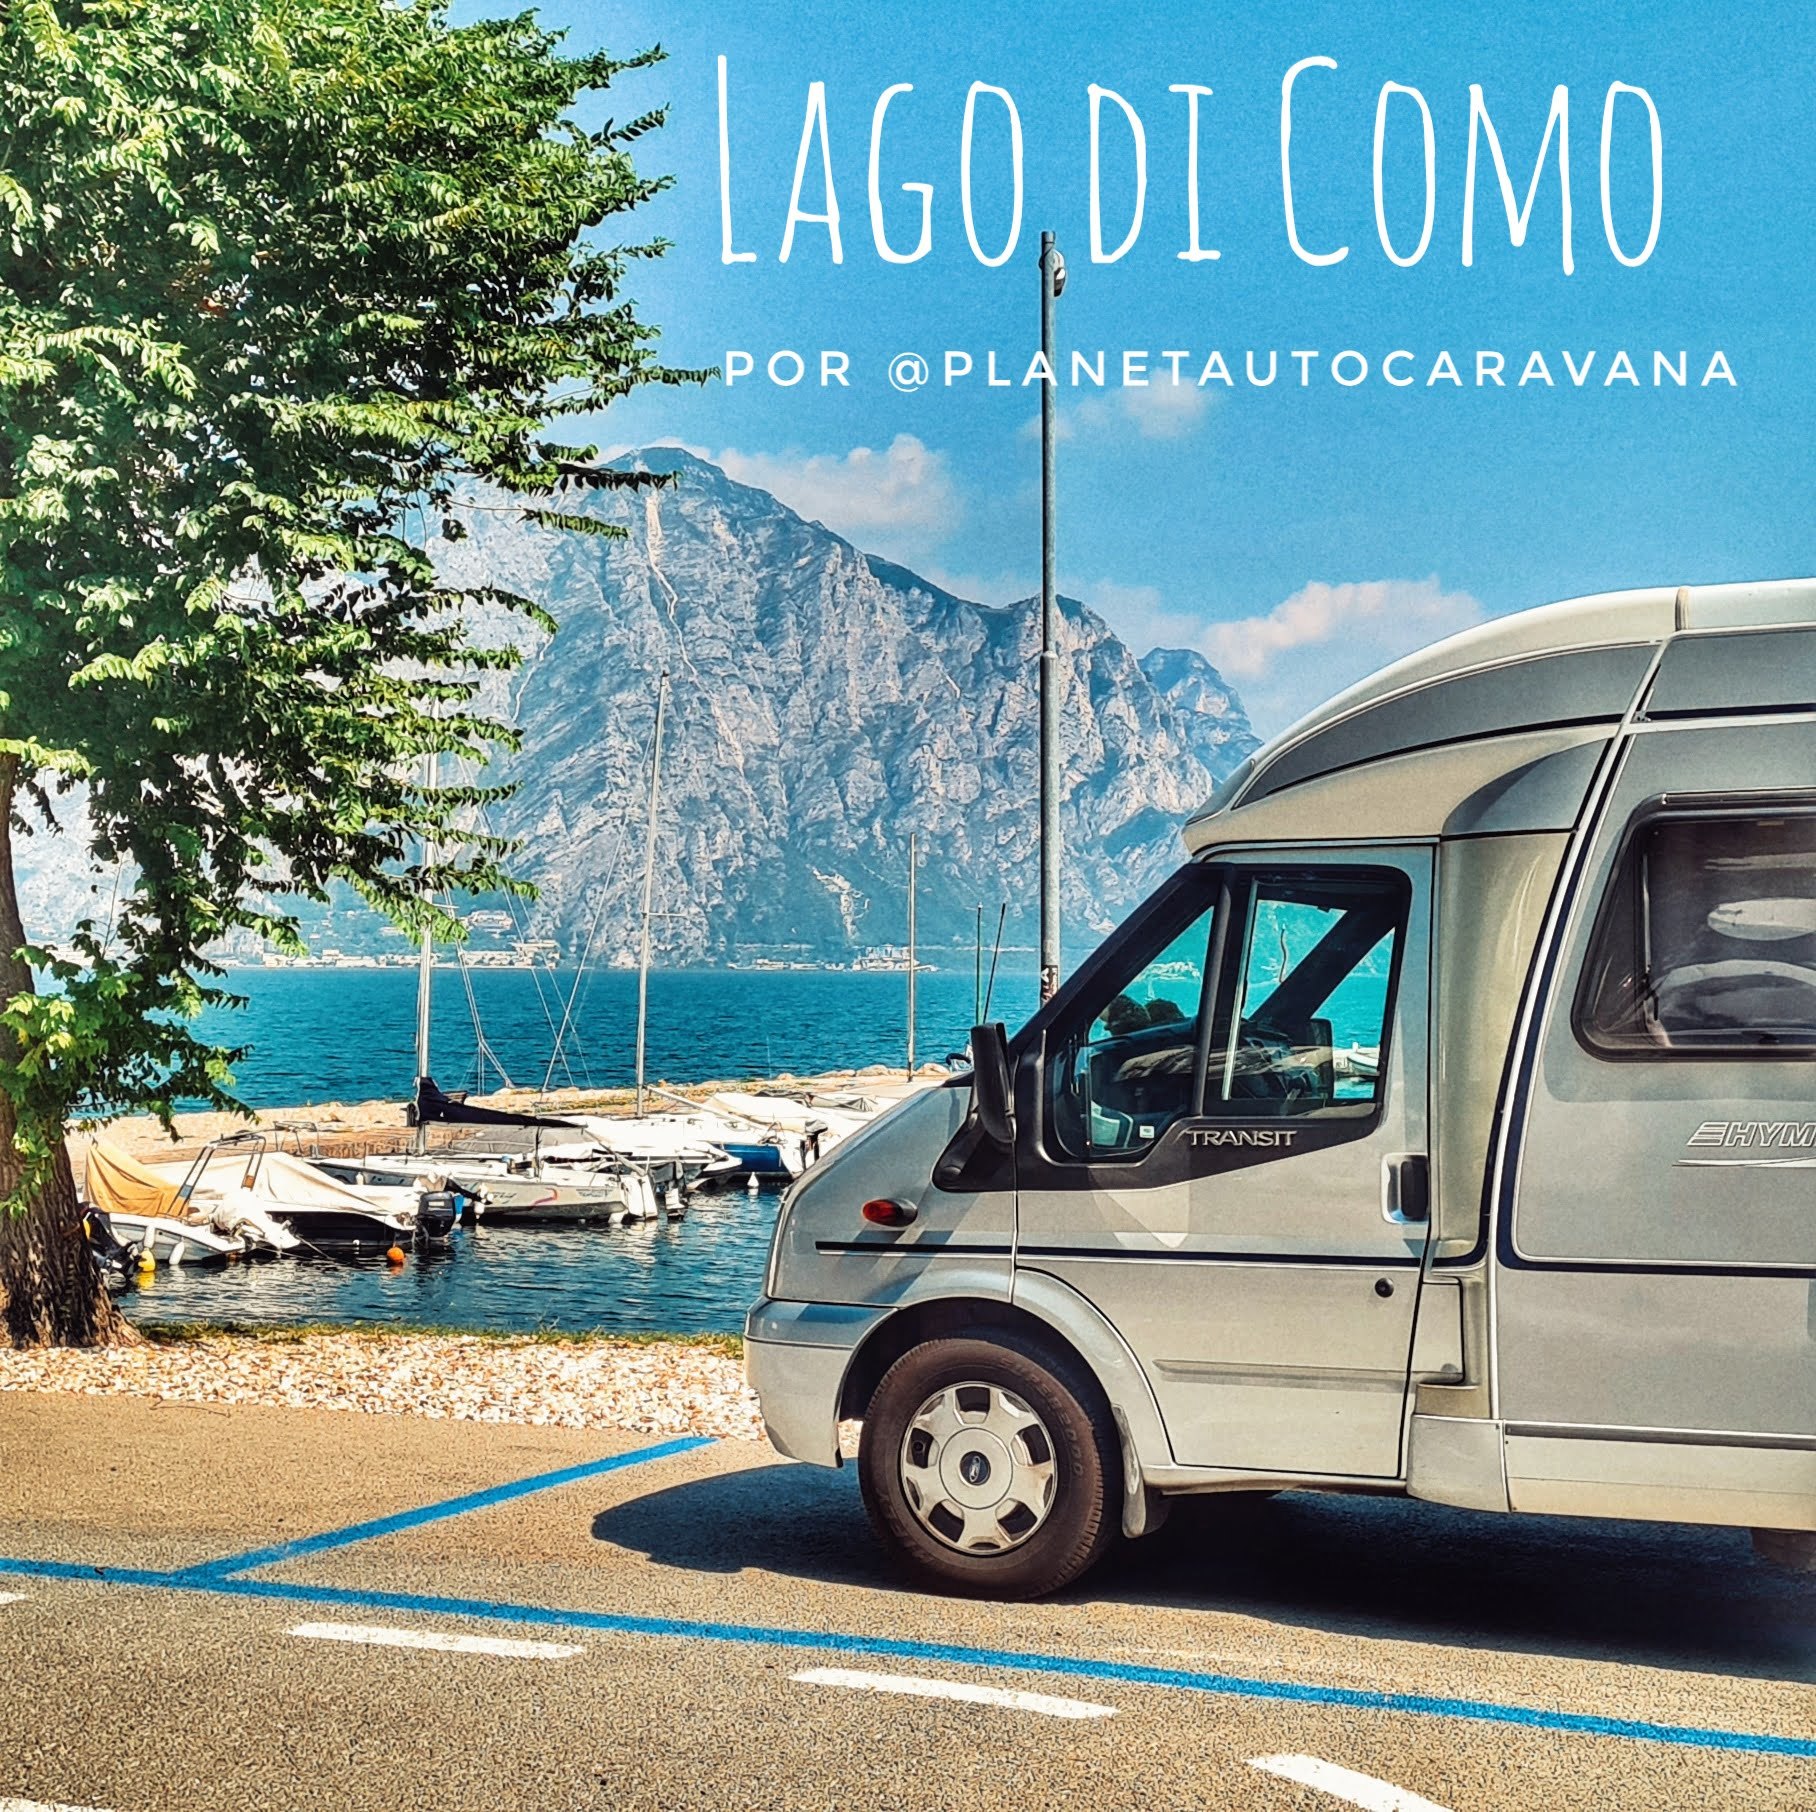 In questo momento stai vedendo il Lago di Garda in camper o furgone degli youtuber Planet